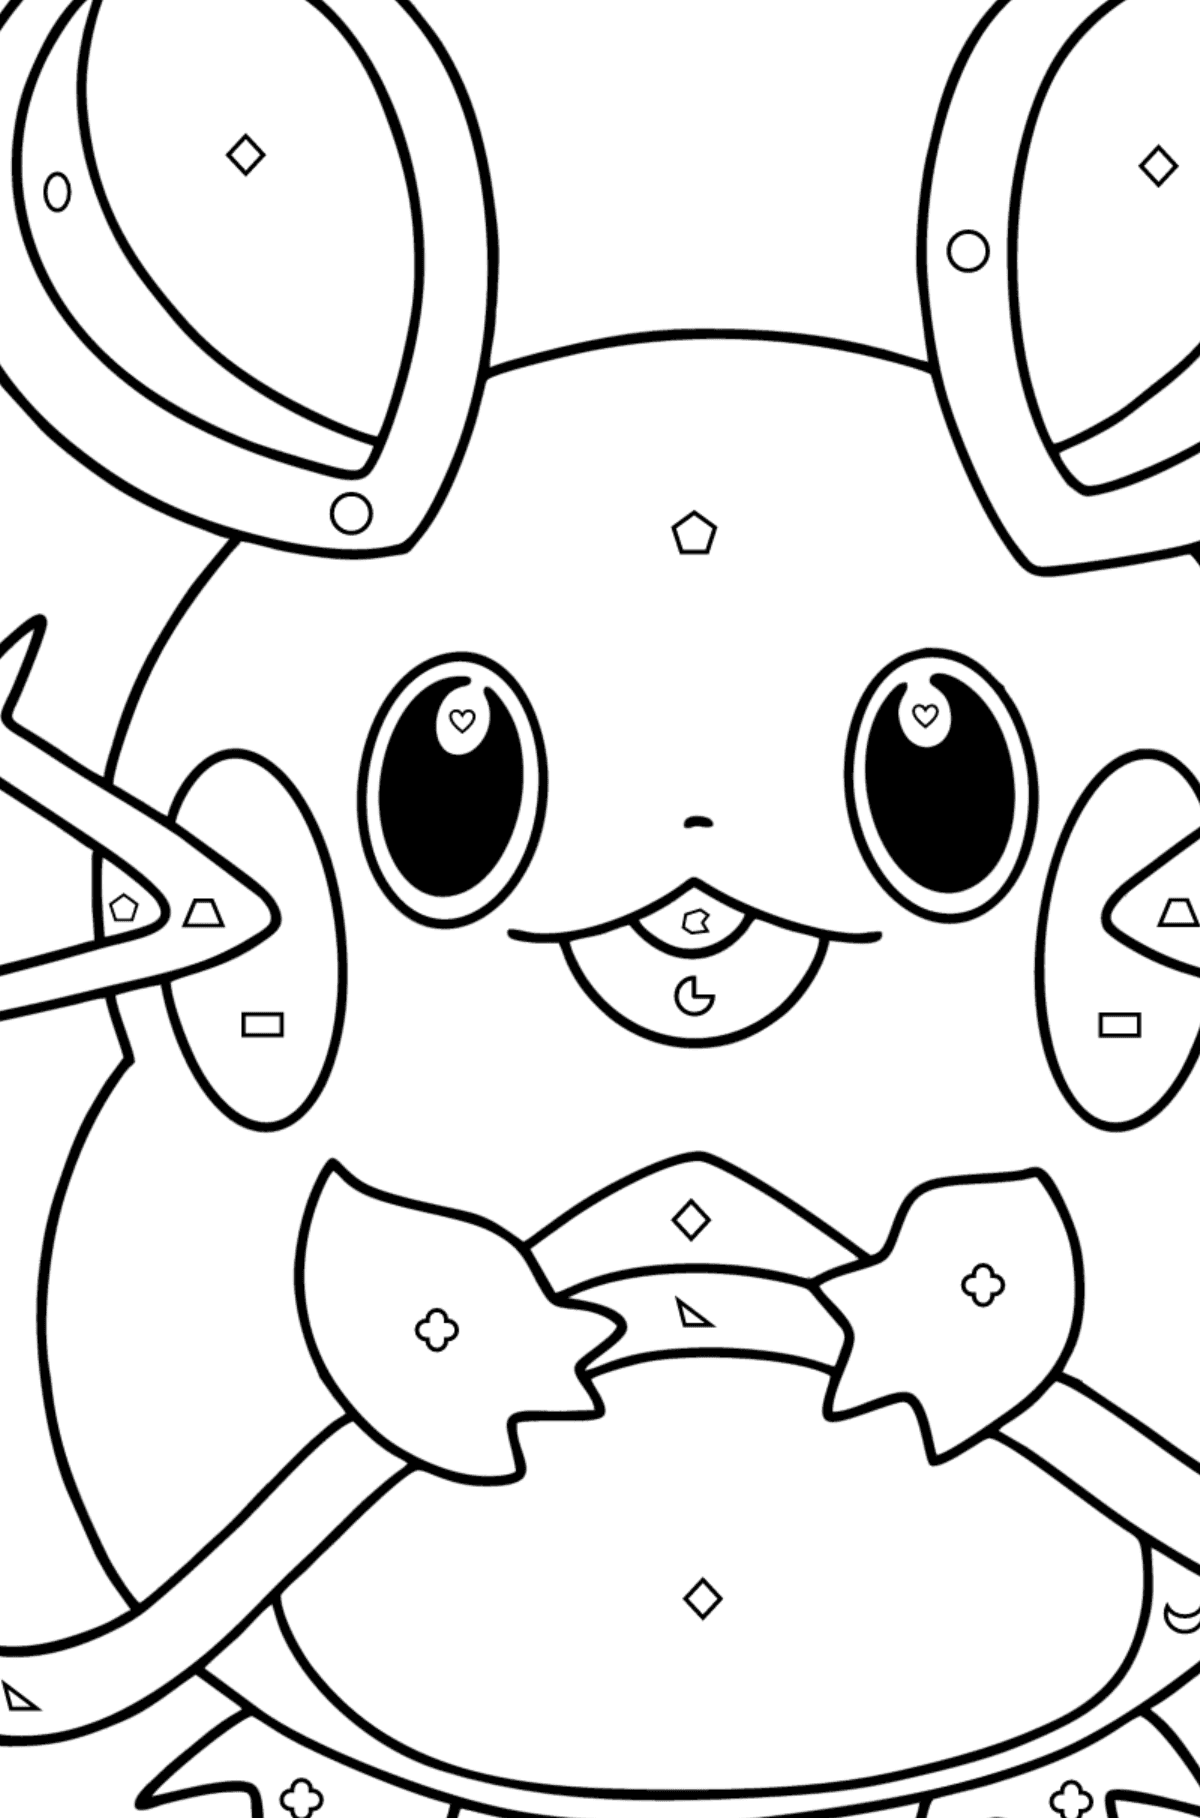 Desenho de Pokémon XY Dedenne para colorir - Colorir por Formas Geométricas para Crianças